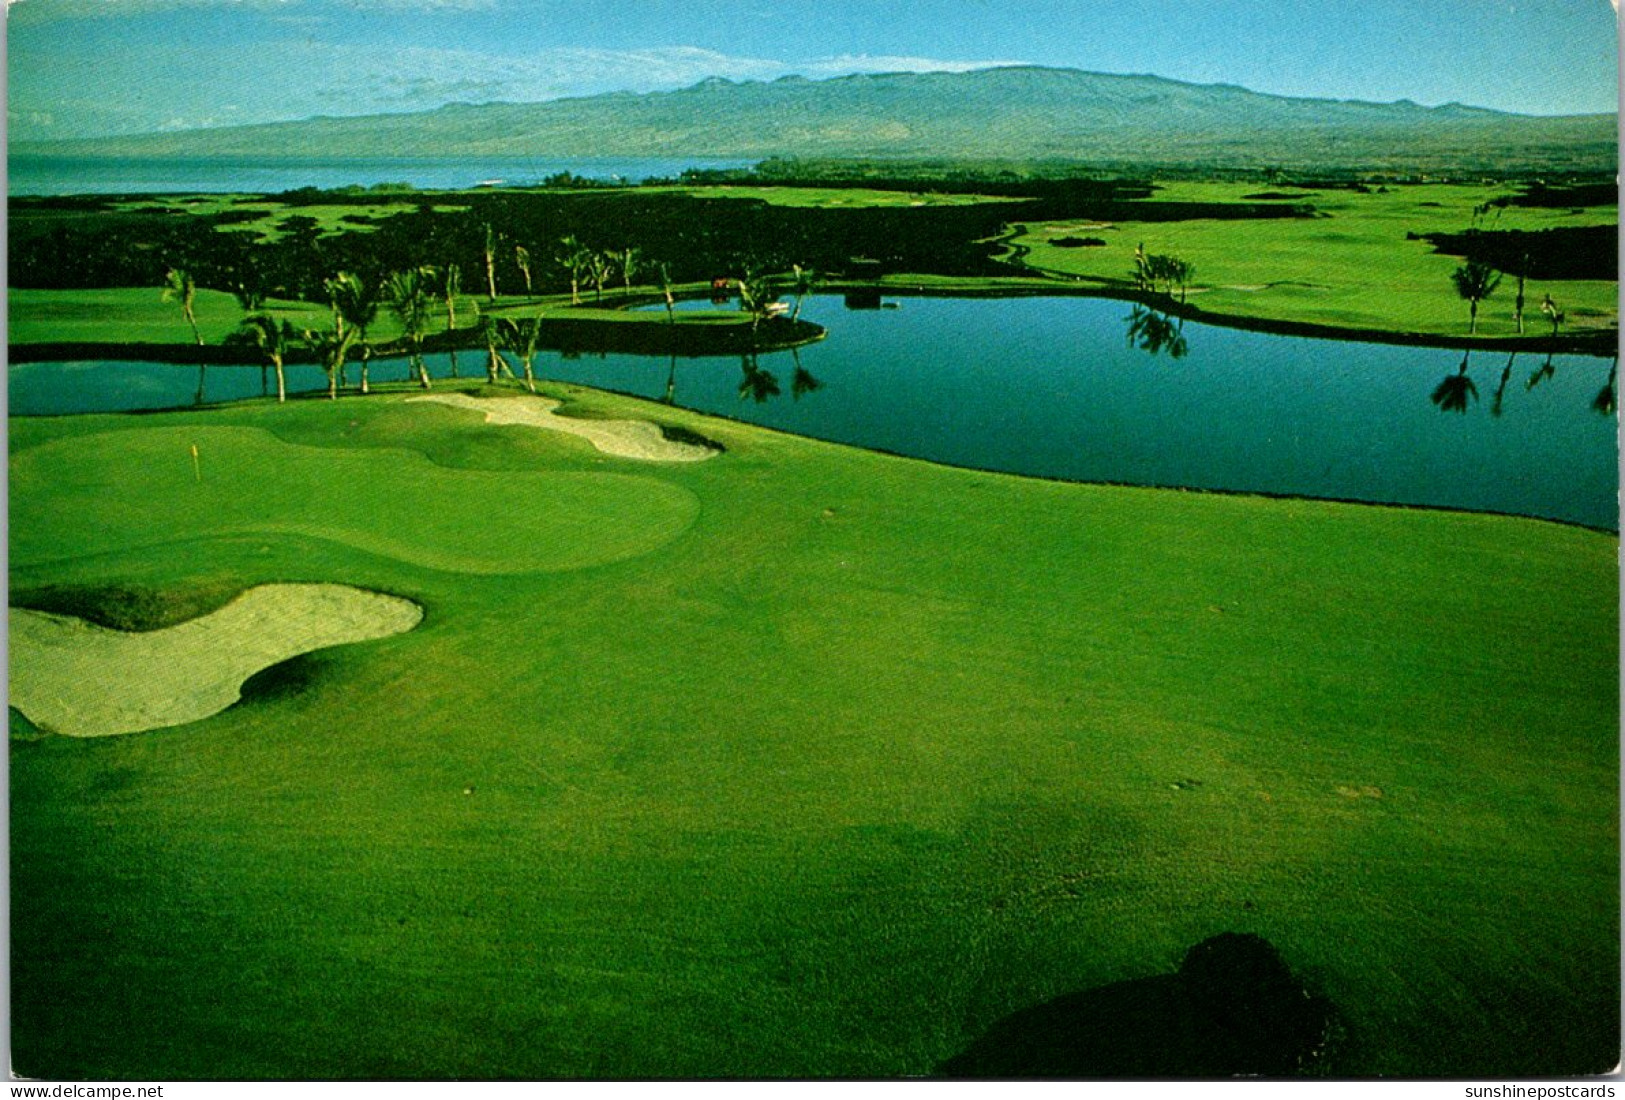 Hawaii Big Island Kohala Coast The Mauna Lani Resort Golf Course Number 3 Green - Big Island Of Hawaii